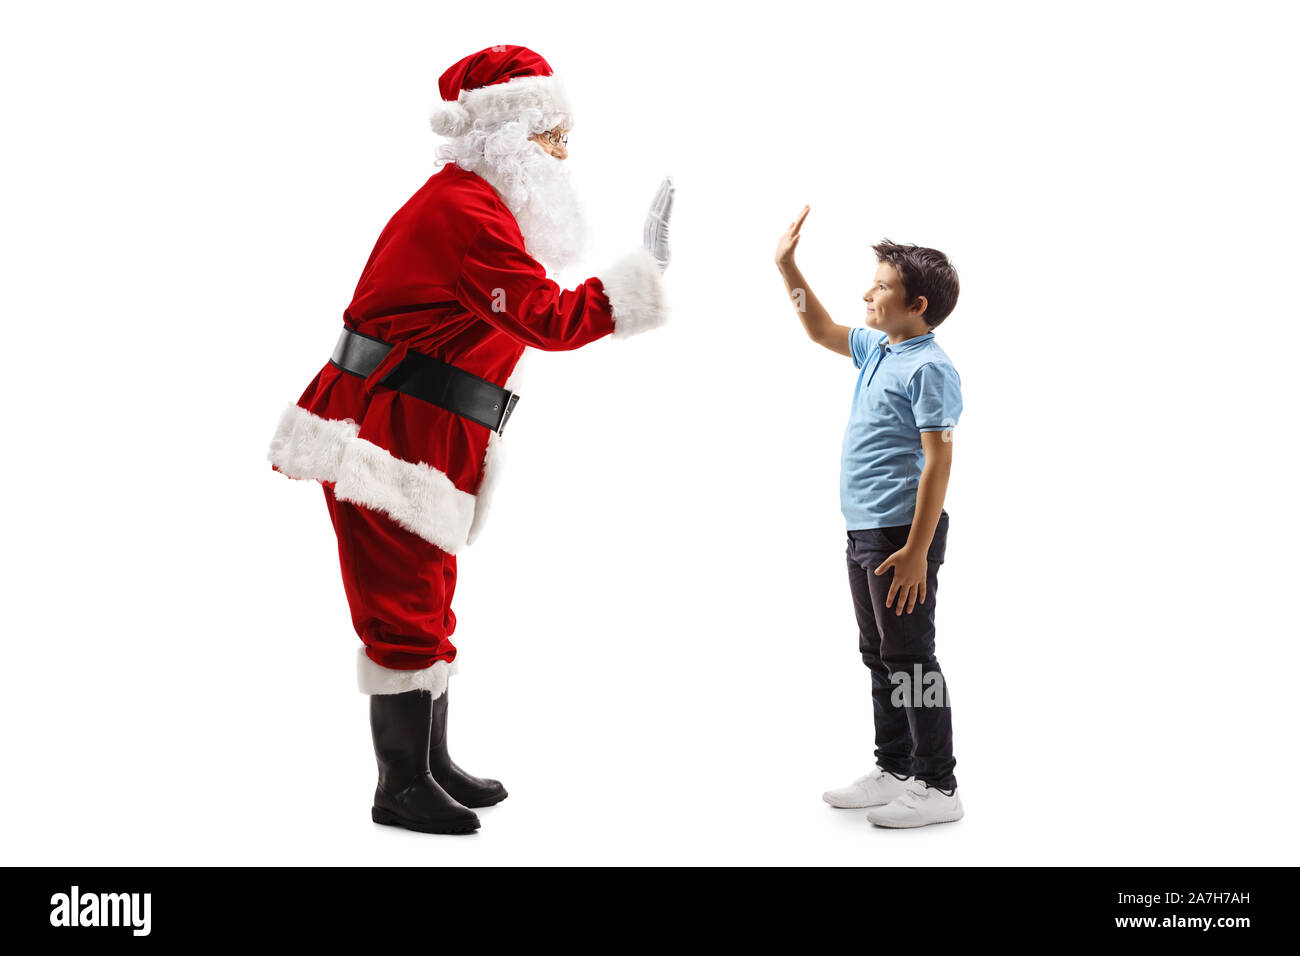 Profil de pleine longueur tourné du Père Noël gesticulant des cinq avec un petit garçon isolé sur fond blanc Banque D'Images